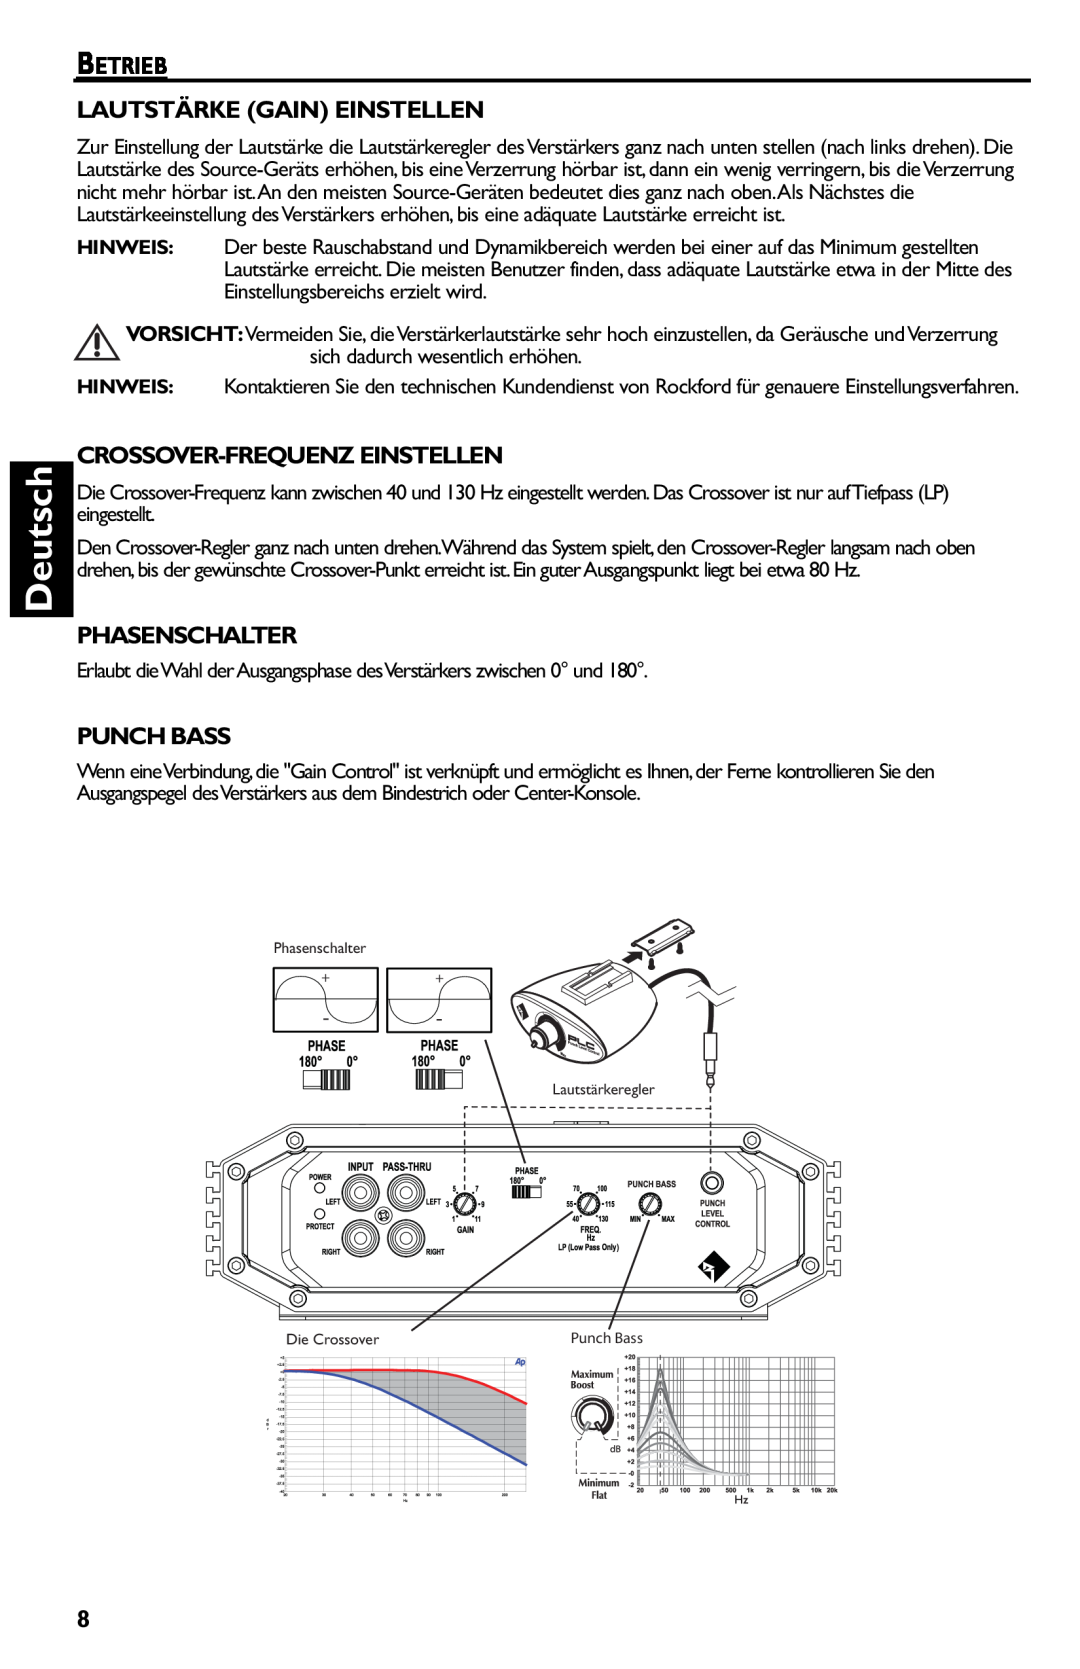 Rockford Fosgate R500-1 manual Deutsch, Betrieb Lautstärke Gain Einstellen, Crossover-Frequenzeinstellen, Phasenschalter 